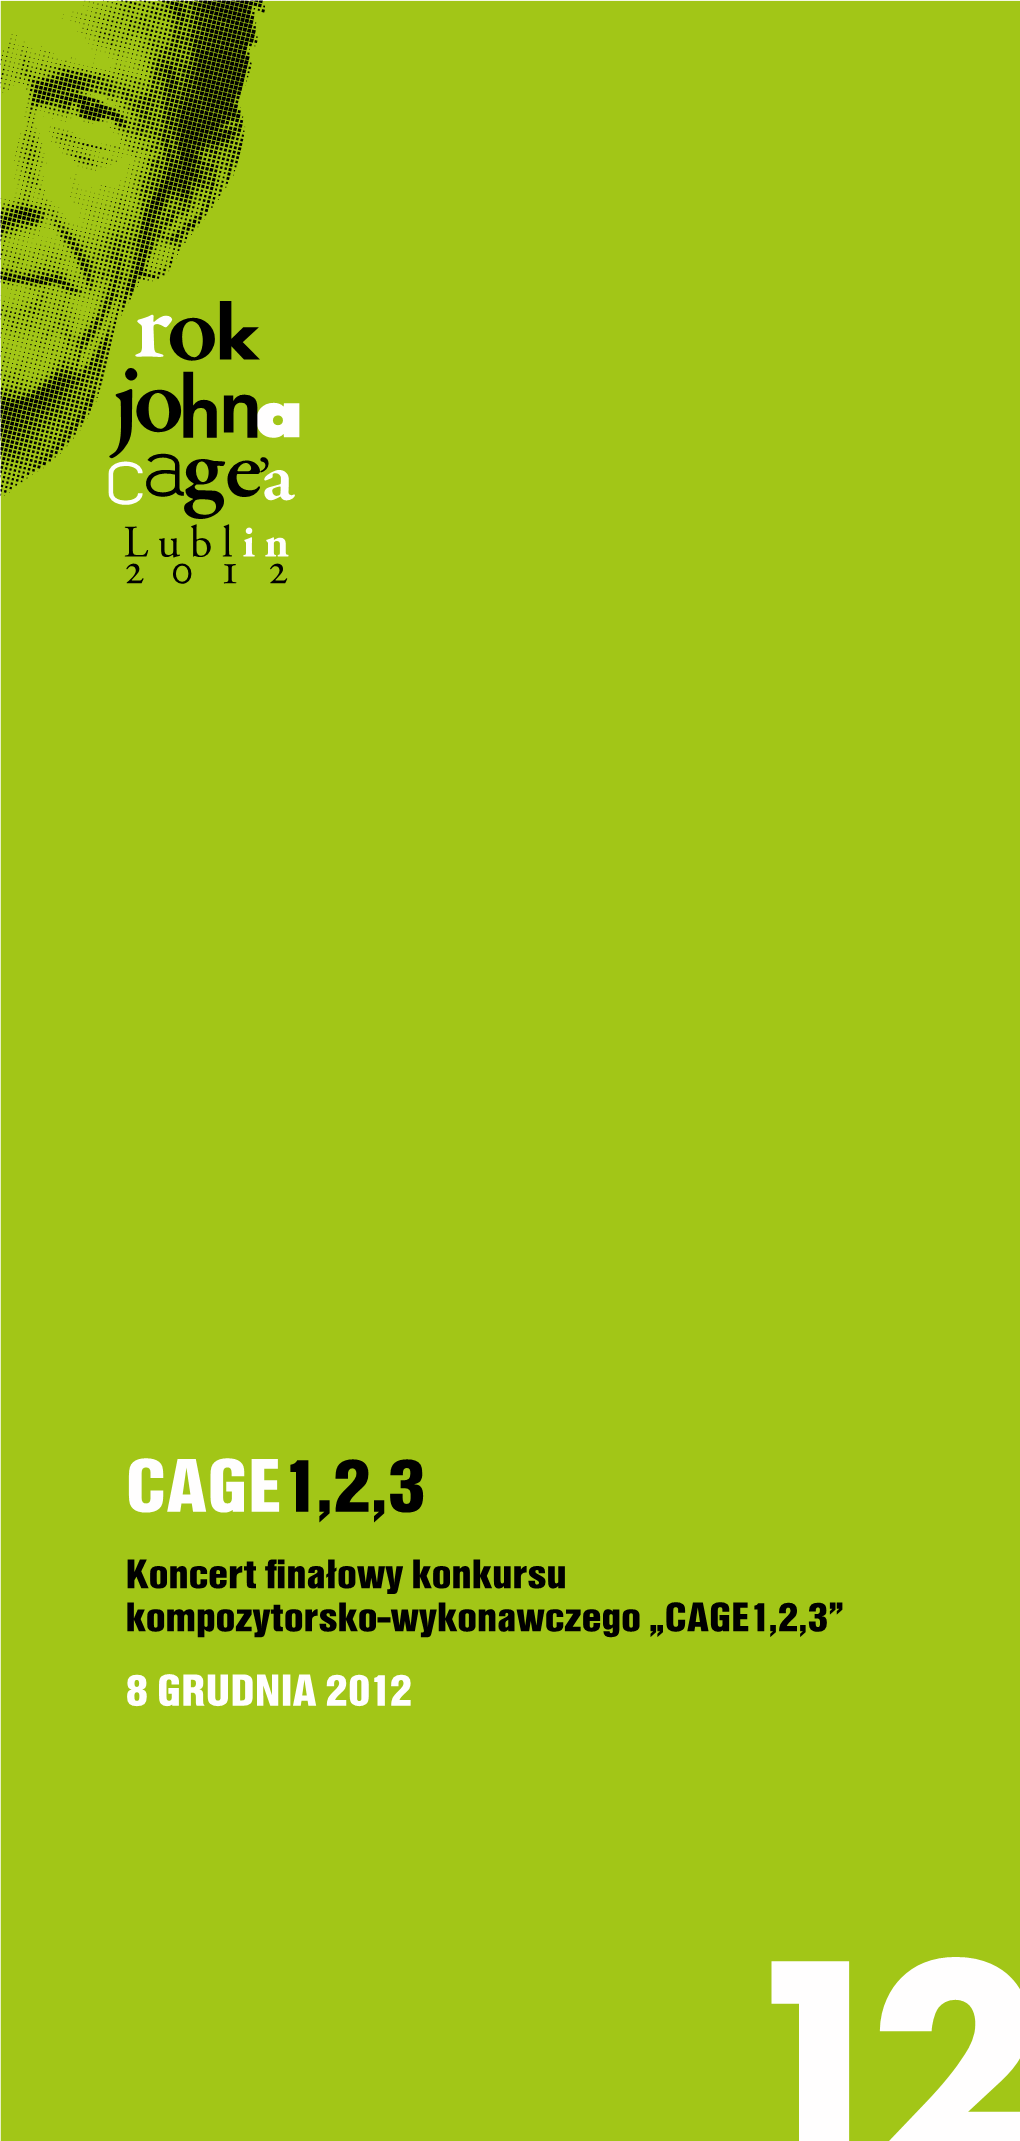 CAGE1,2,3 Koncert Finałowy Konkursu Kompozytorsko-Wykonawczego „Cage1,2,3” 8 Grudnia 2012 8 Grudnia 2012 (Sobota) Studio Muzyczne Radia Lublin, Ul